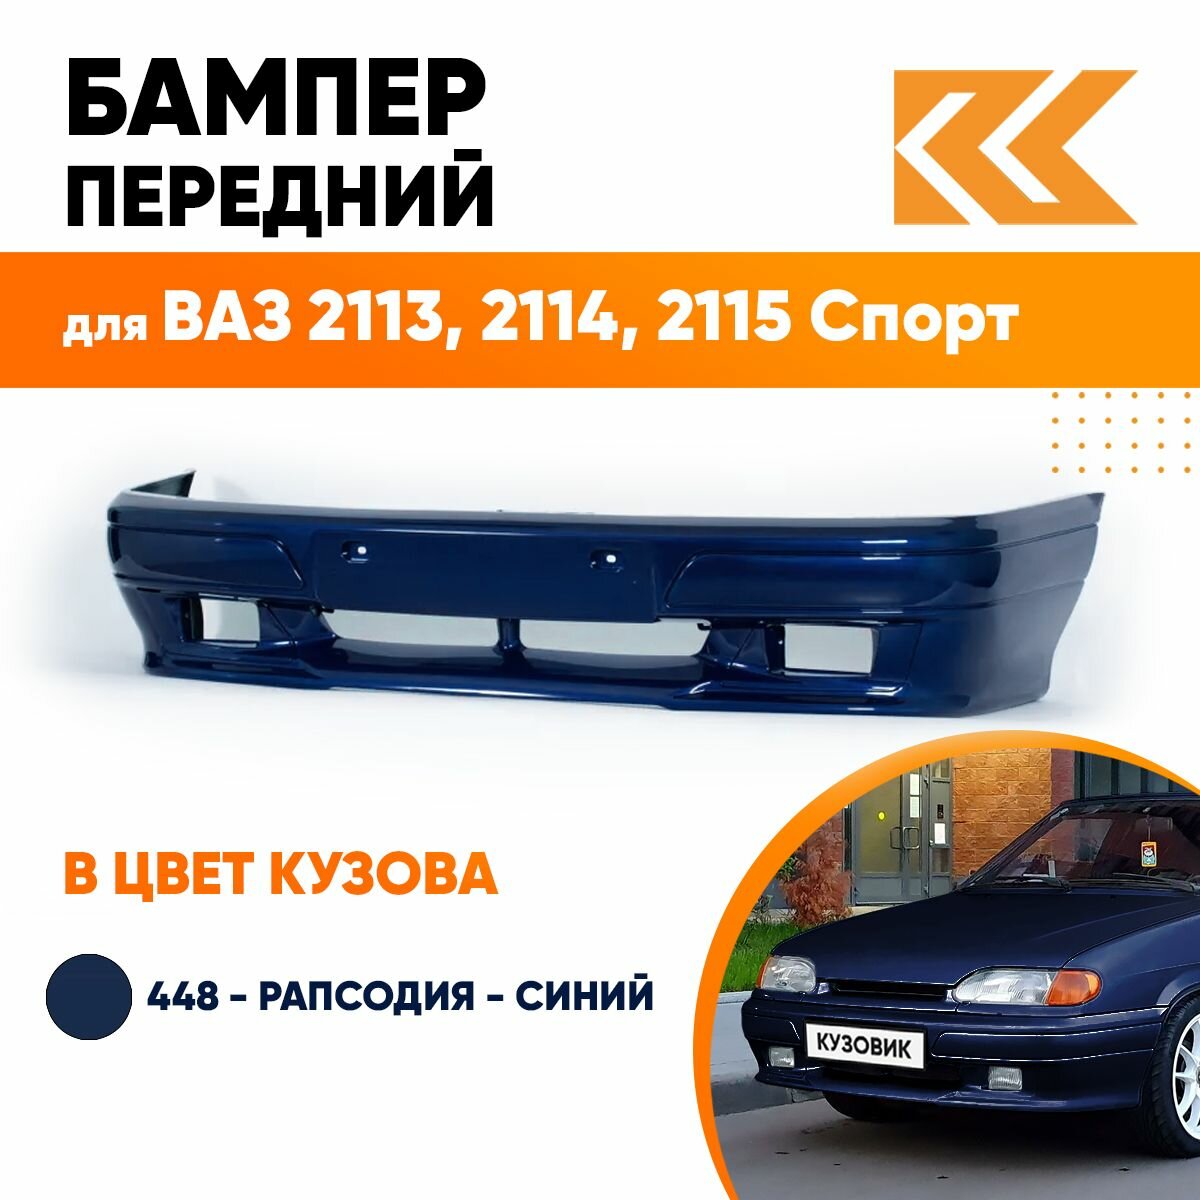 Бампер передний в цвет кузова ВАЗ 2113, 2114, 2115 спорт 448 - Рапсодия - Синий